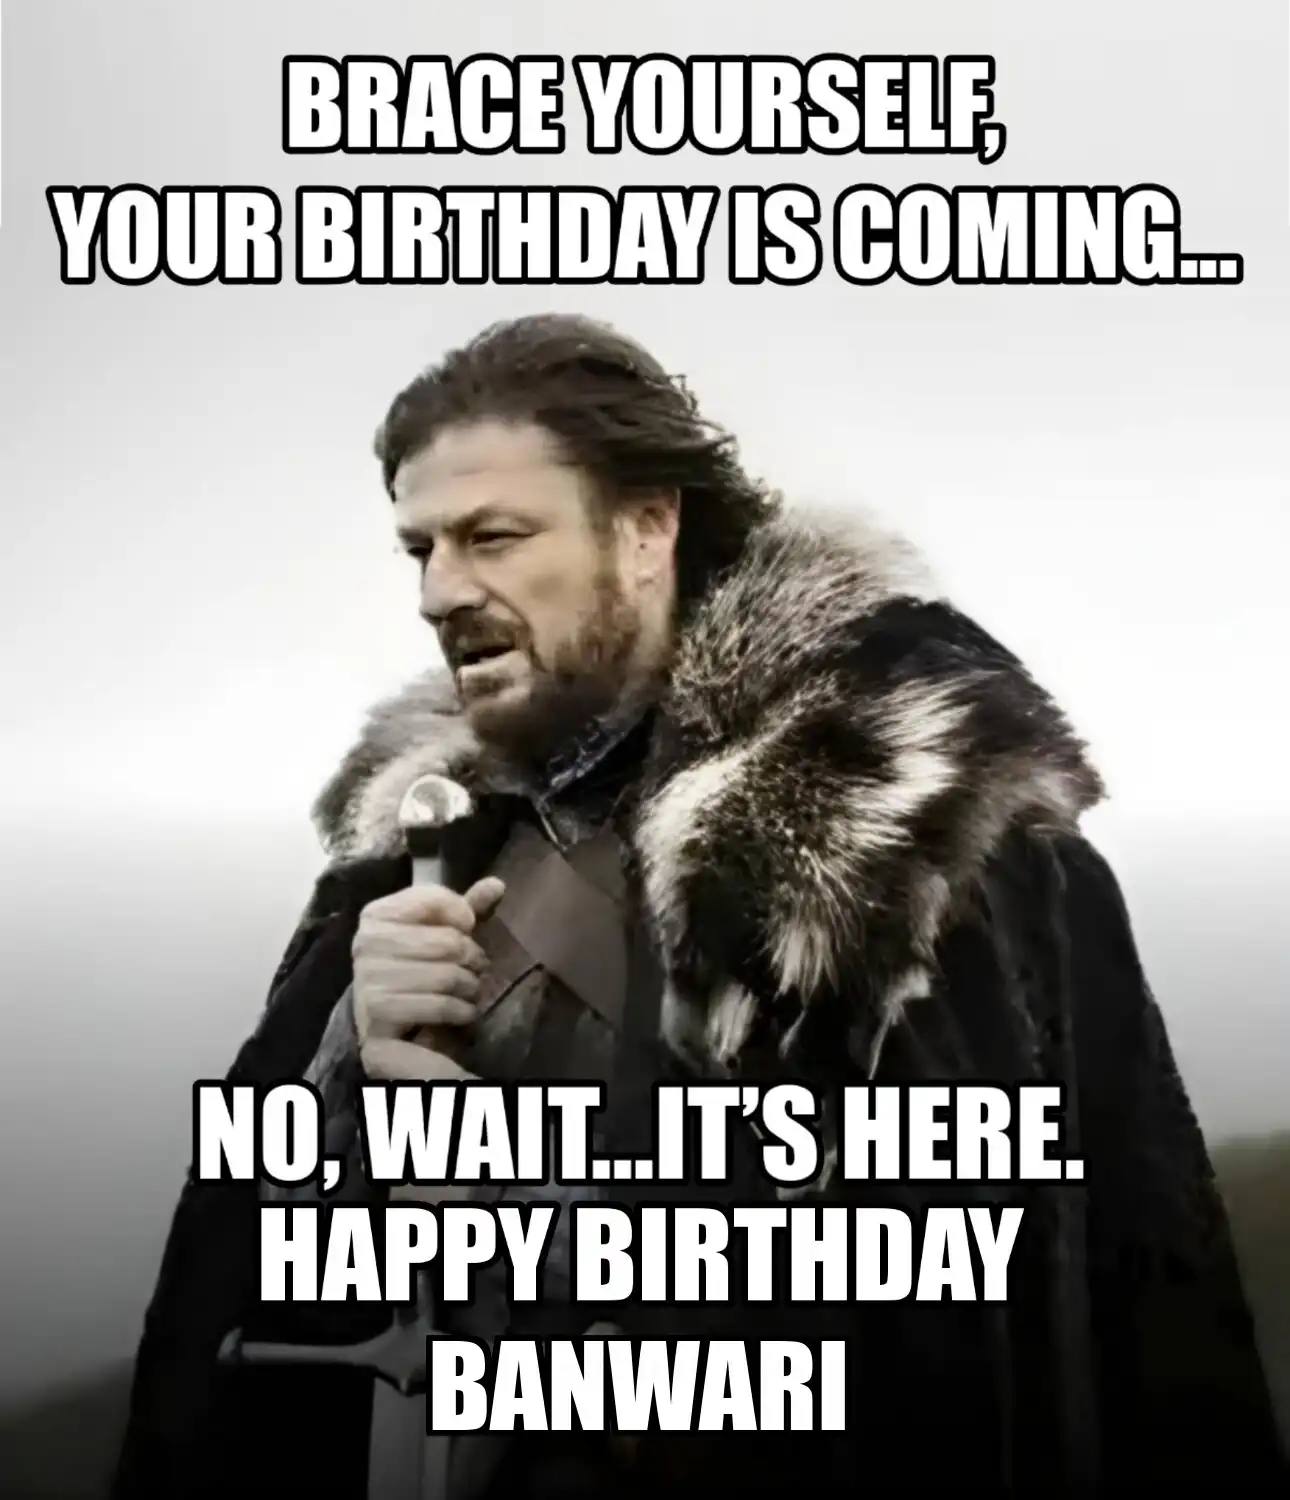 Happy Birthday Banwari Brace Yourself Your Birthday Is Coming Meme